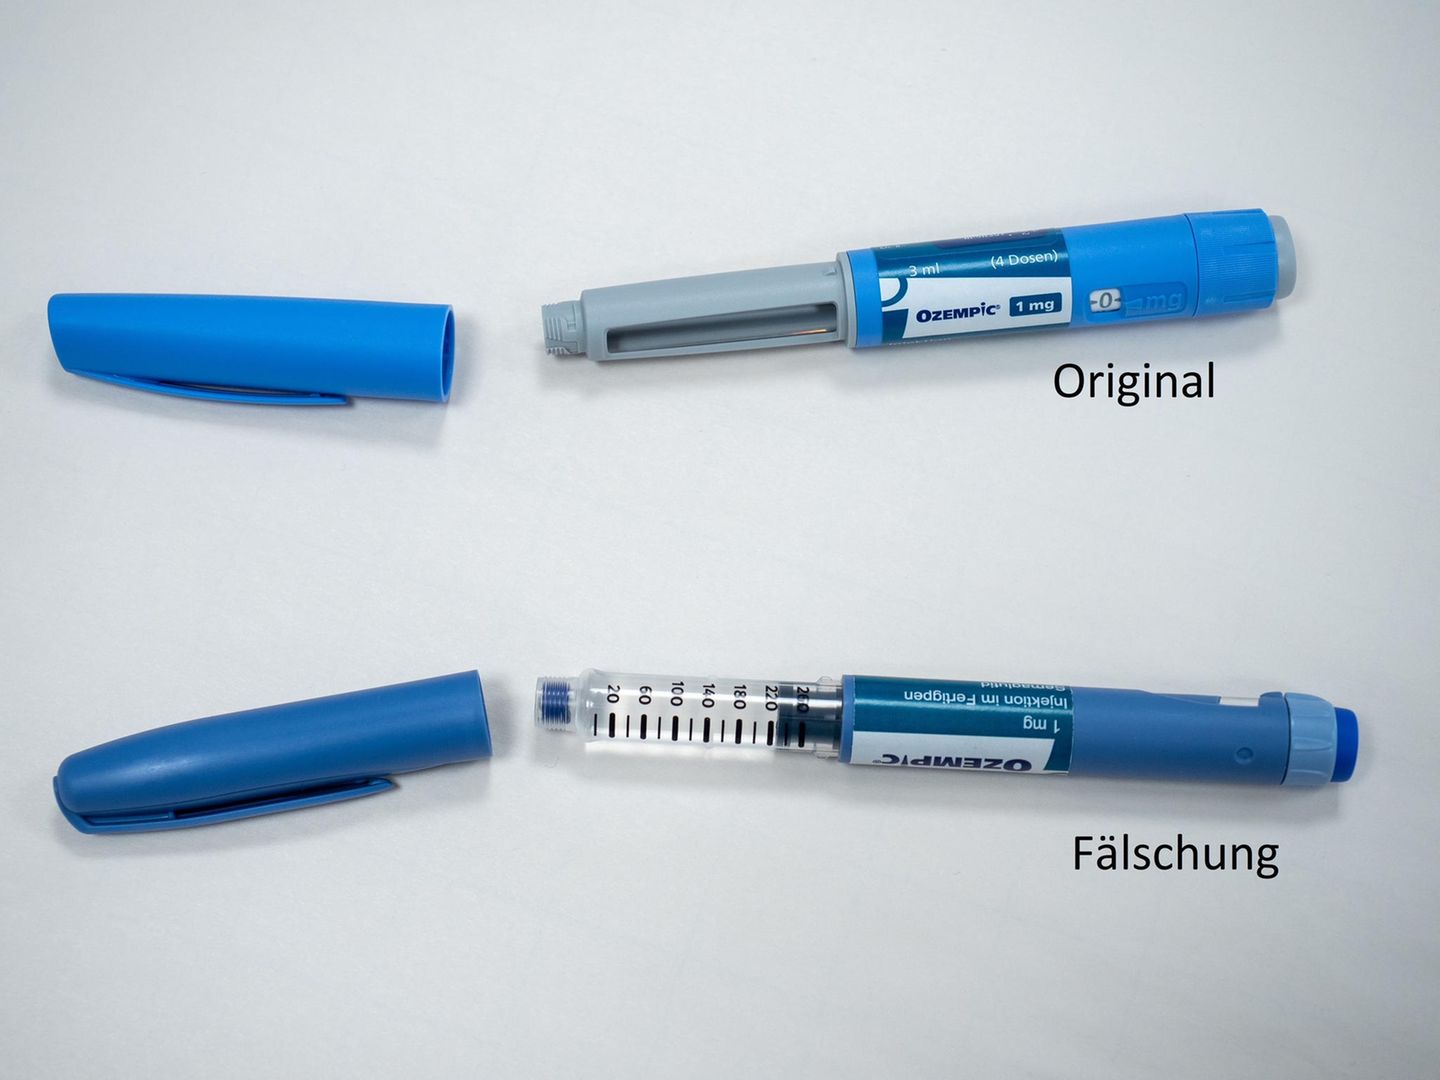 Zwei blaue Injektions-Pens, oben in hellblau das Original-Diabetesmittel Ozempic, unten eine Fälschung